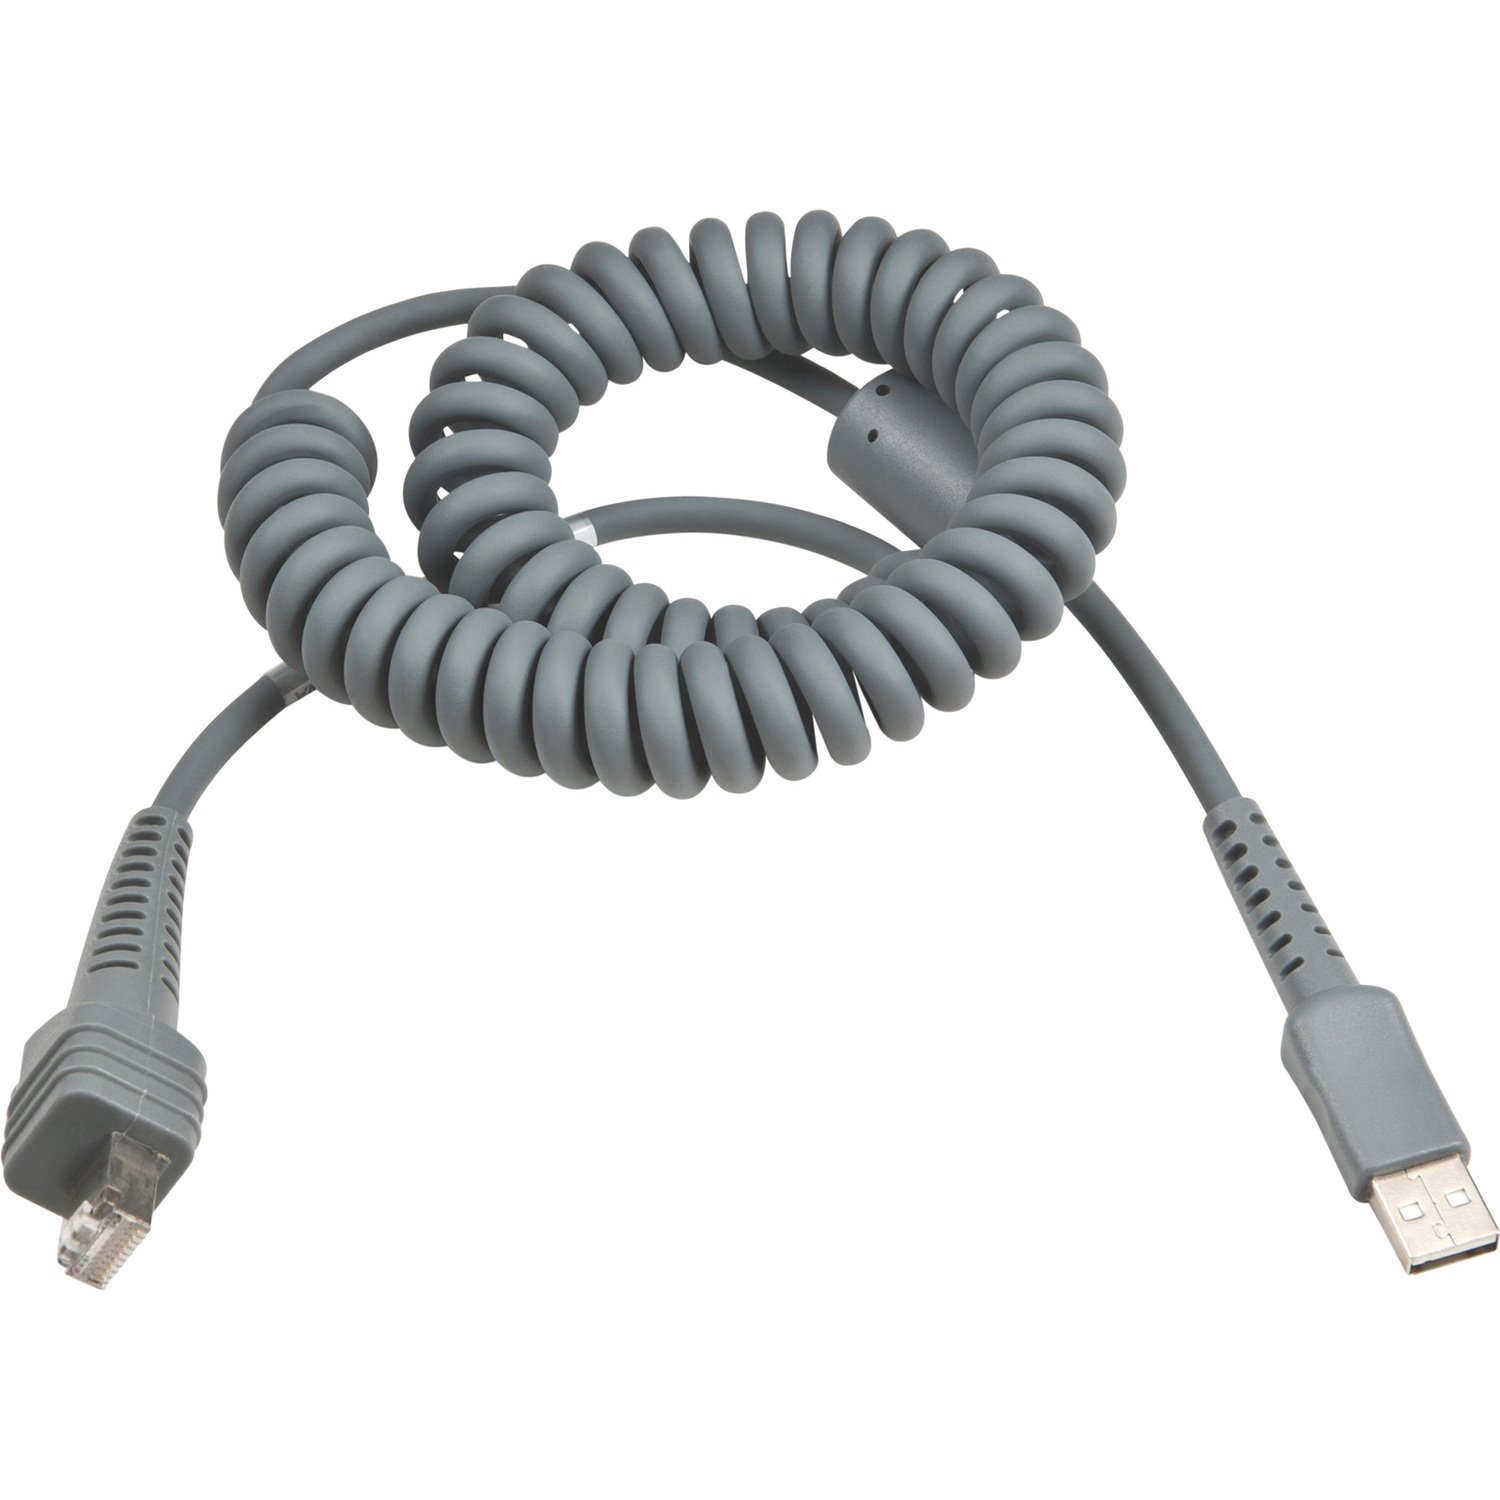 Intermec USB Cable, 8 Feet, Coiled